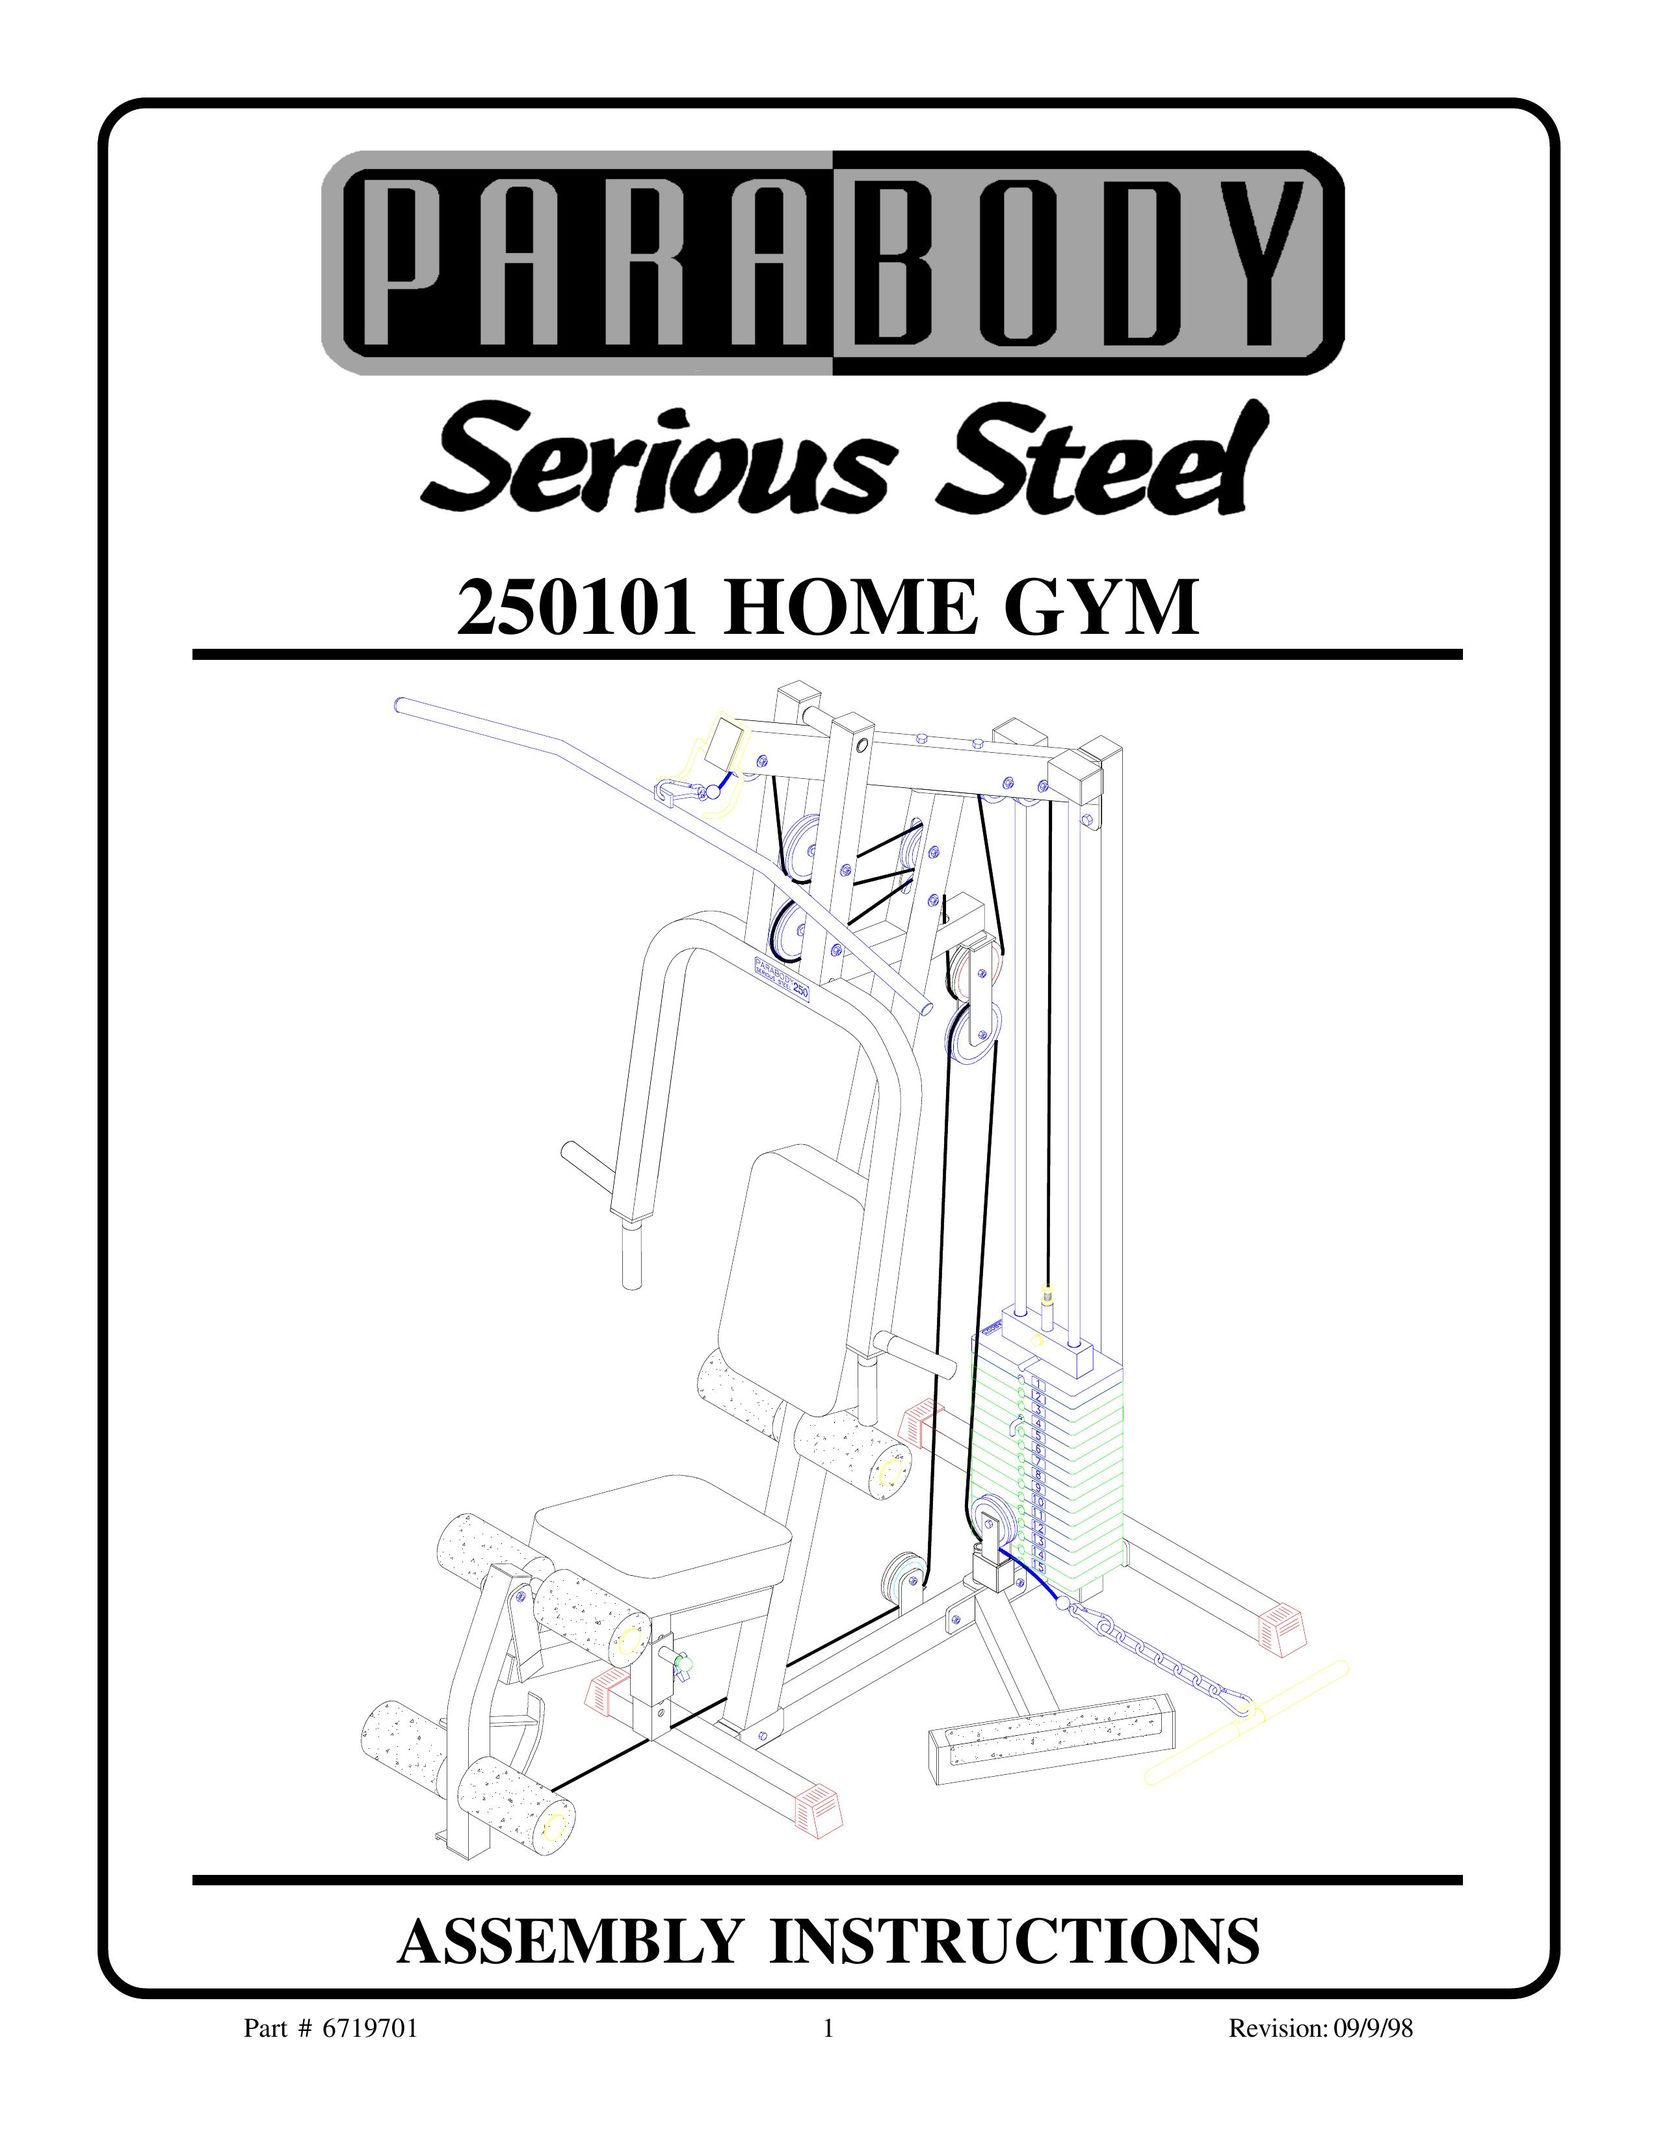 ParaBody 250101 Home Gym User Manual